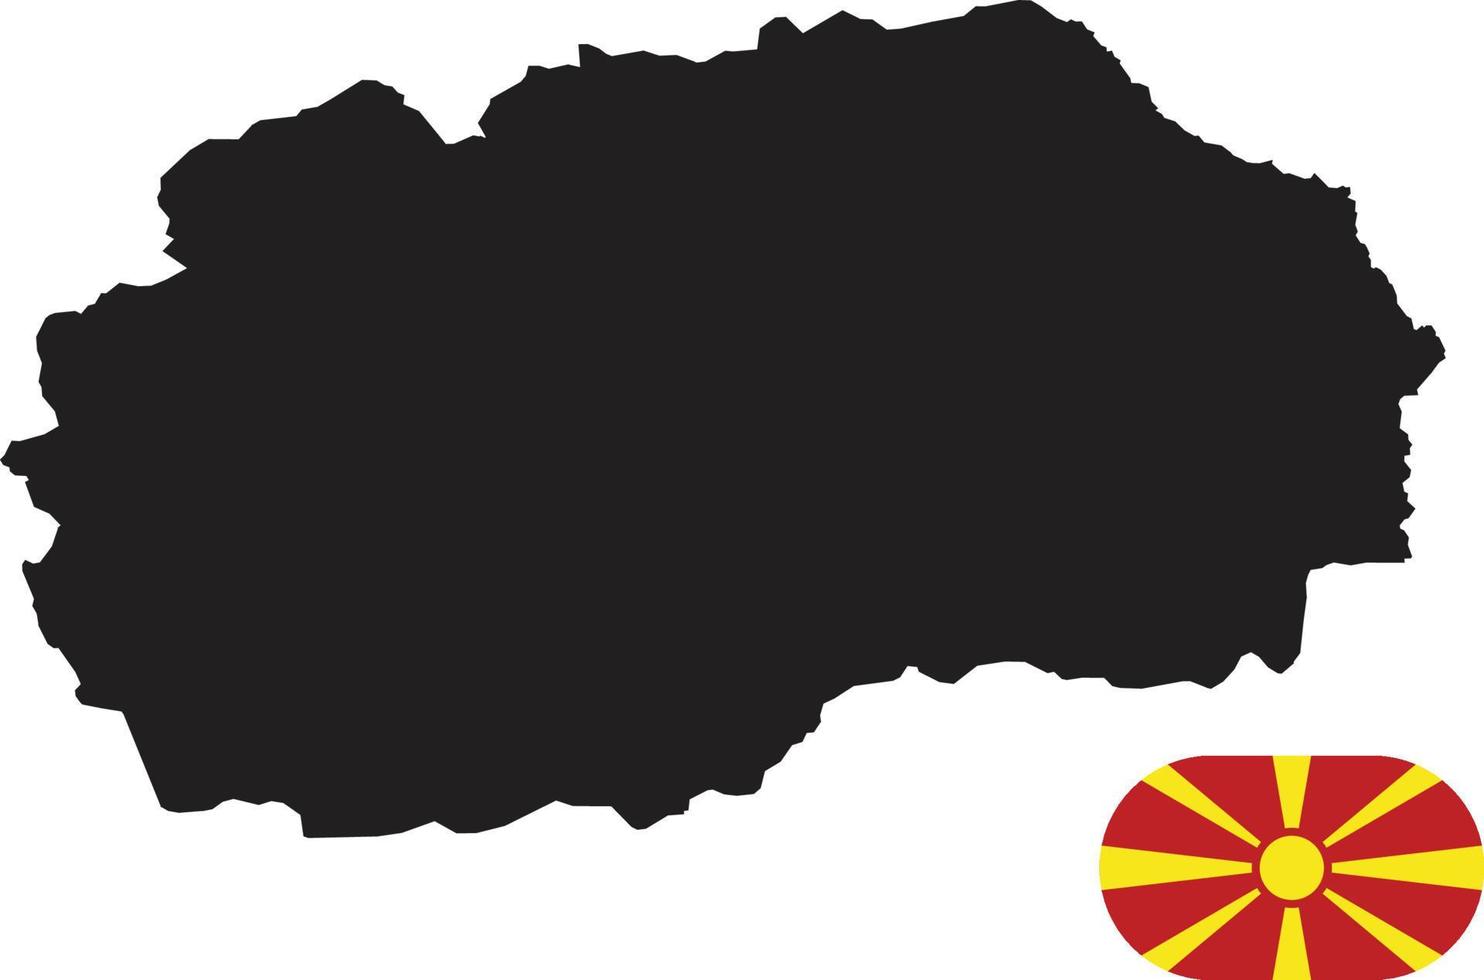 Karte und Flagge von Mazedonien vektor